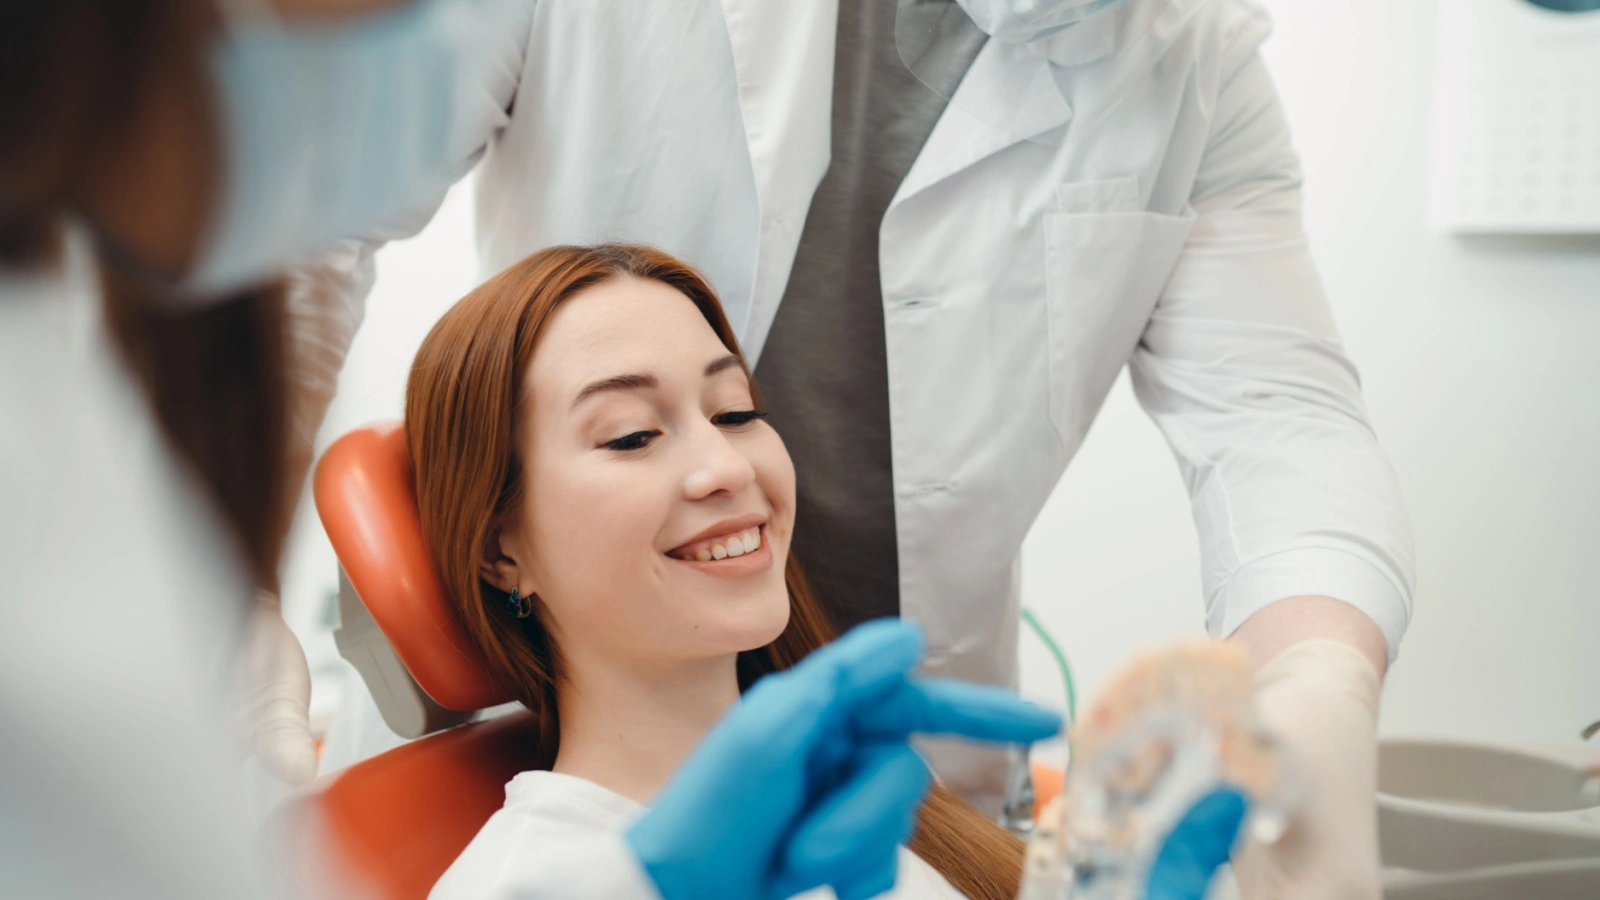 ما هو برد الأسنان؟ وما هي الحالات التي تستدعي هذا الإجراء؟